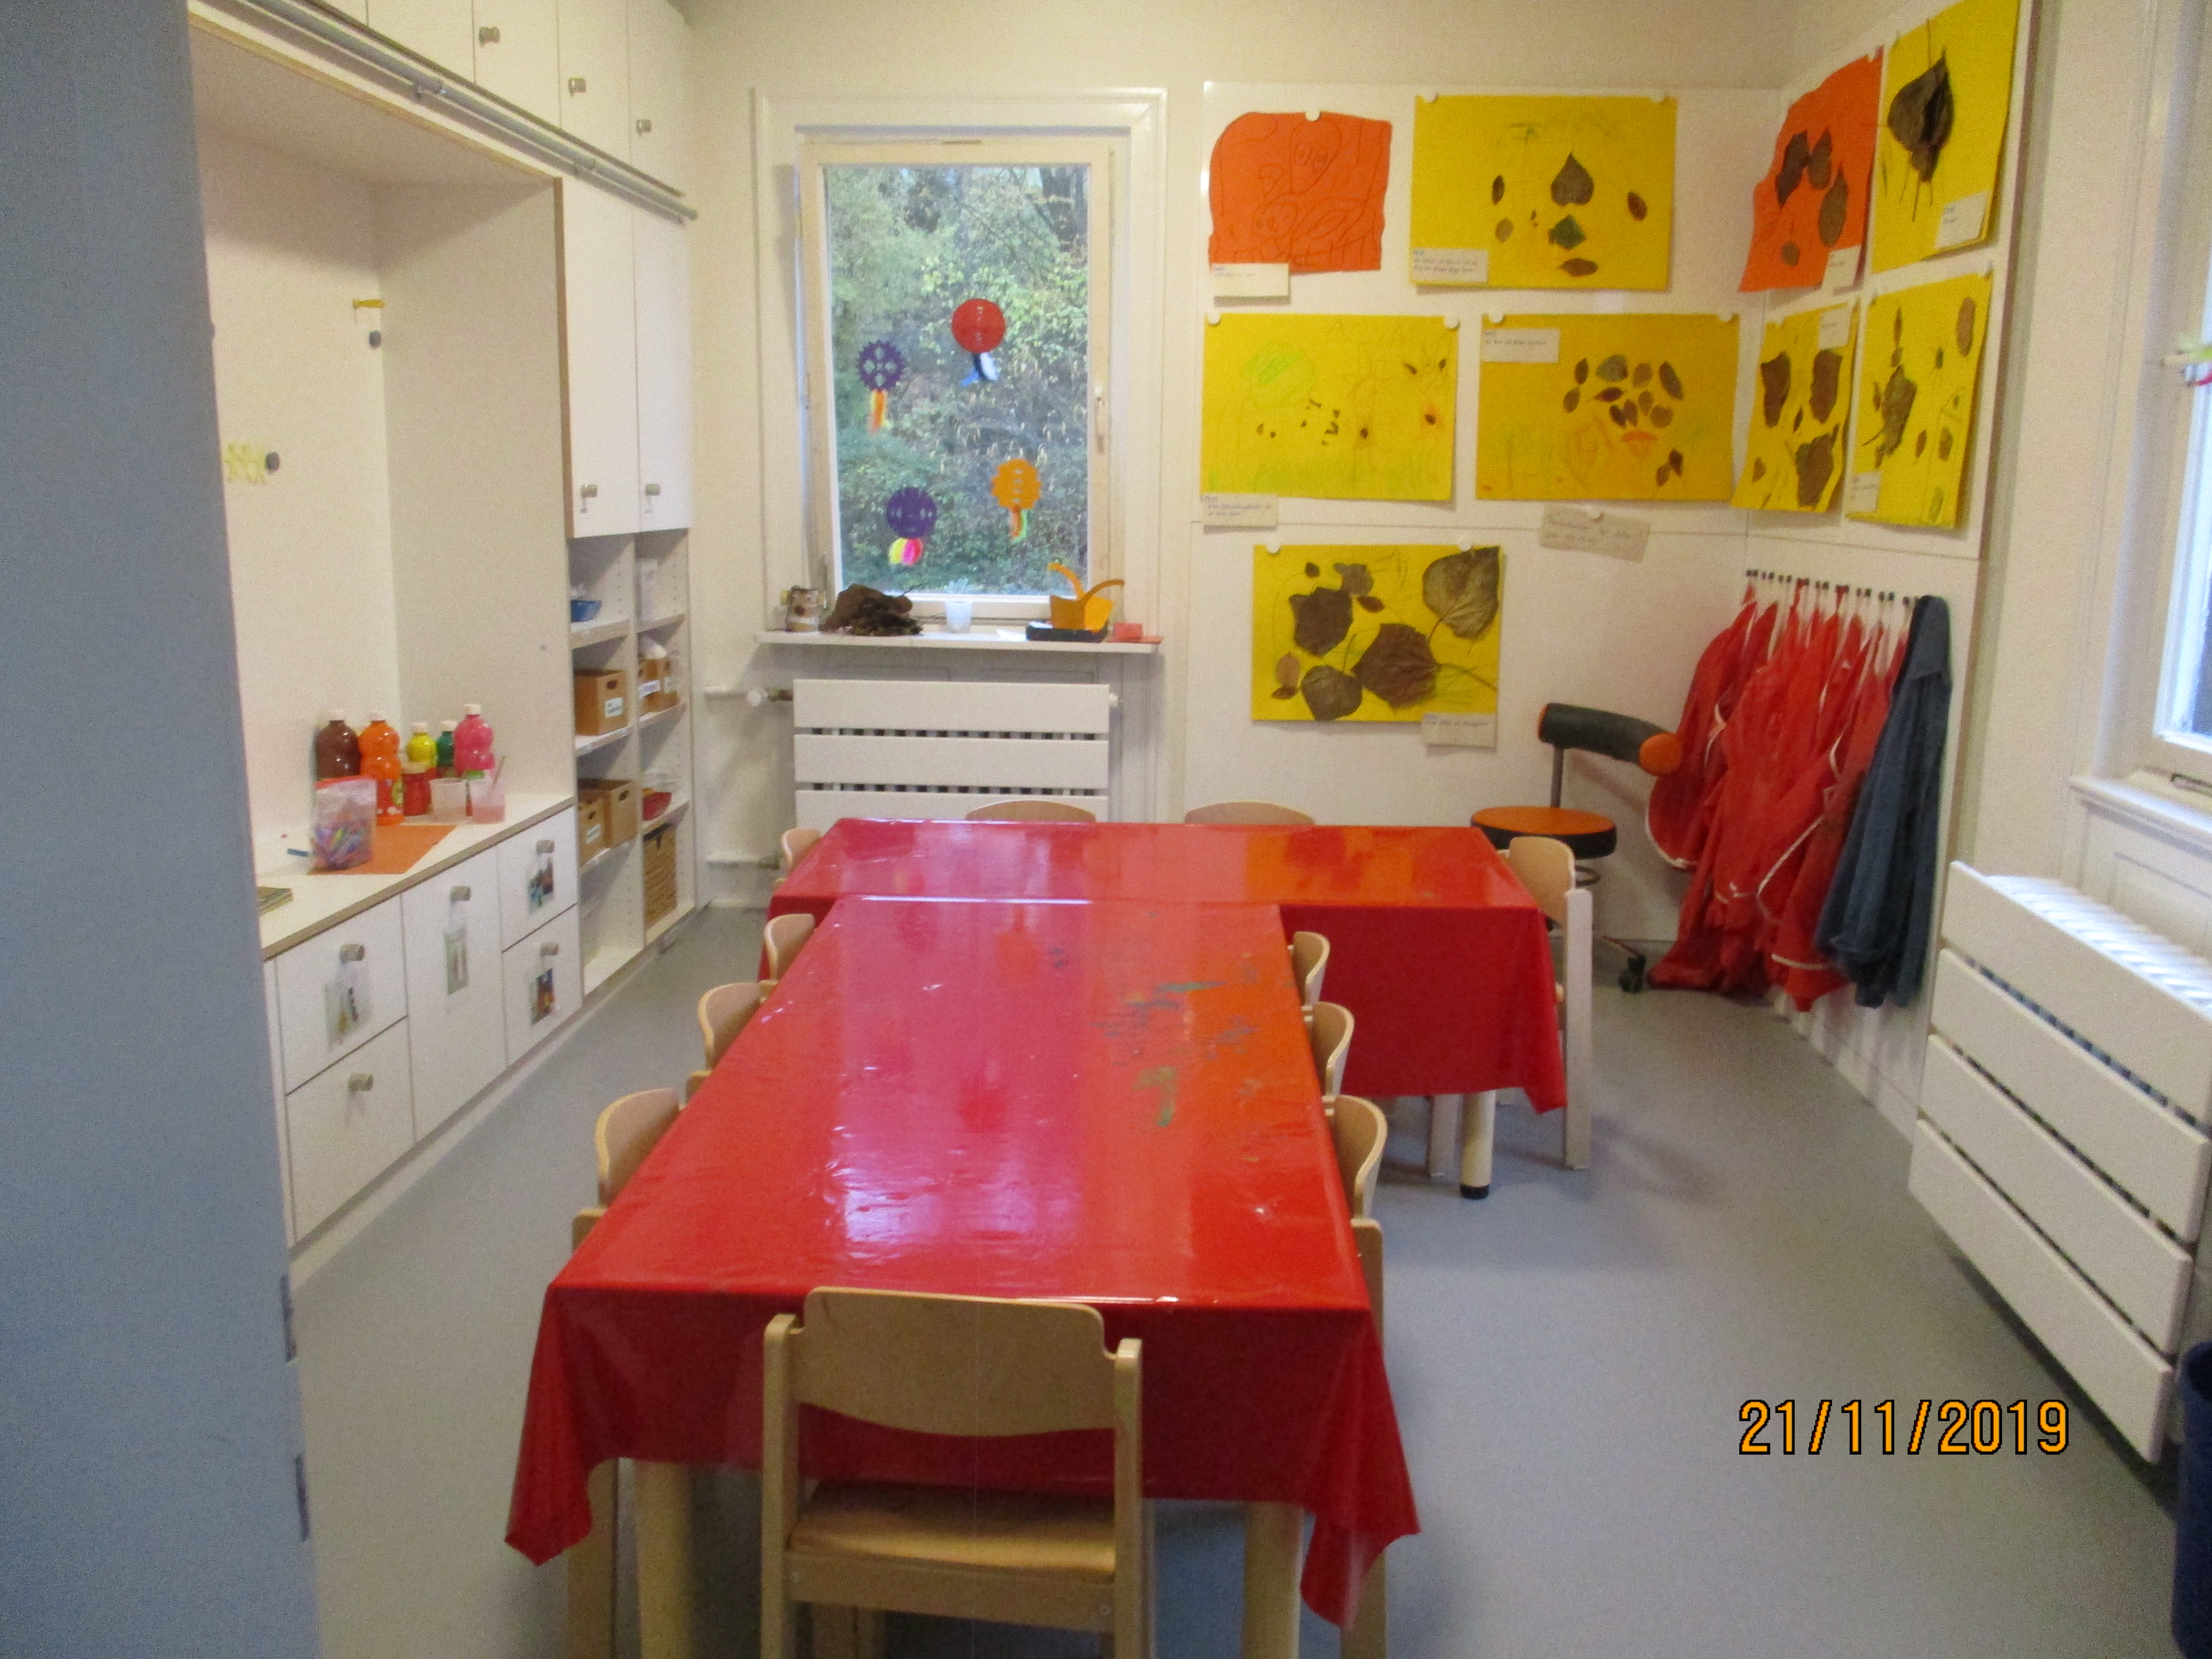 Links sind weiße Einbauschränke mit Farben zu sehen. In der Mitte stehen zwei Tische. Rechts an der Wand hängen Bilder mit Herbstblättern, darunter hängen Malkittel.